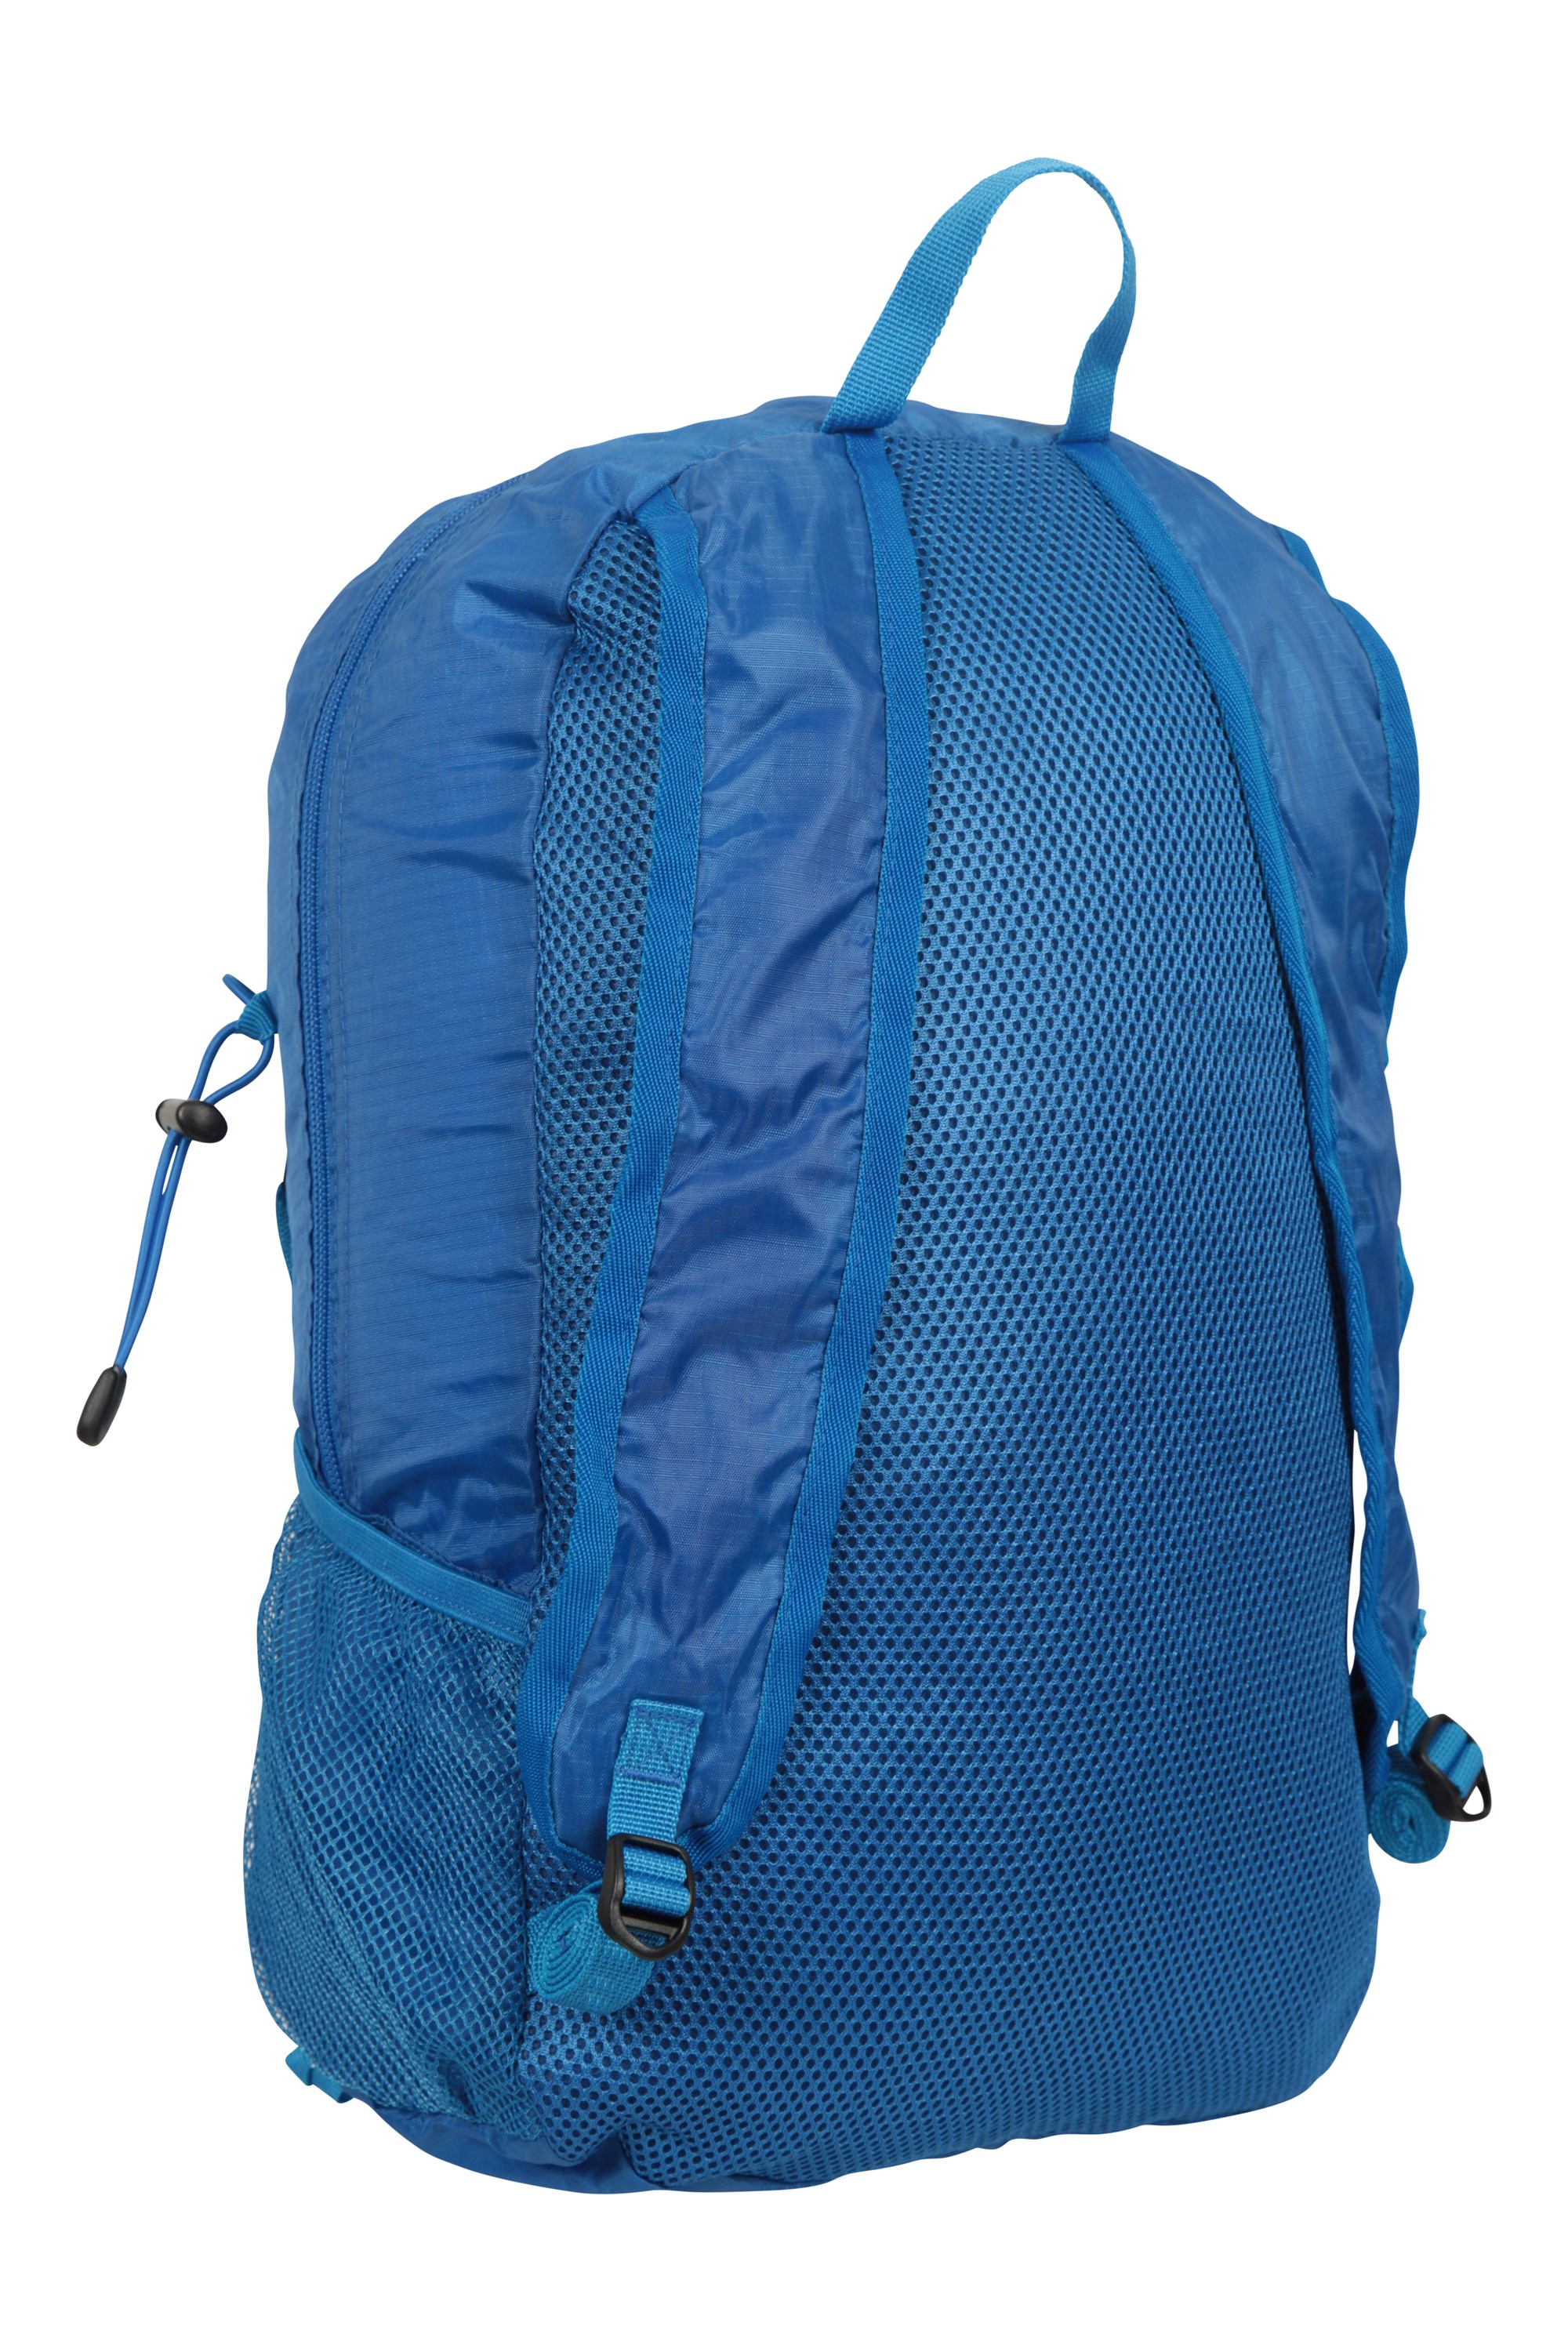 Malvern Packaway Backpack 25L